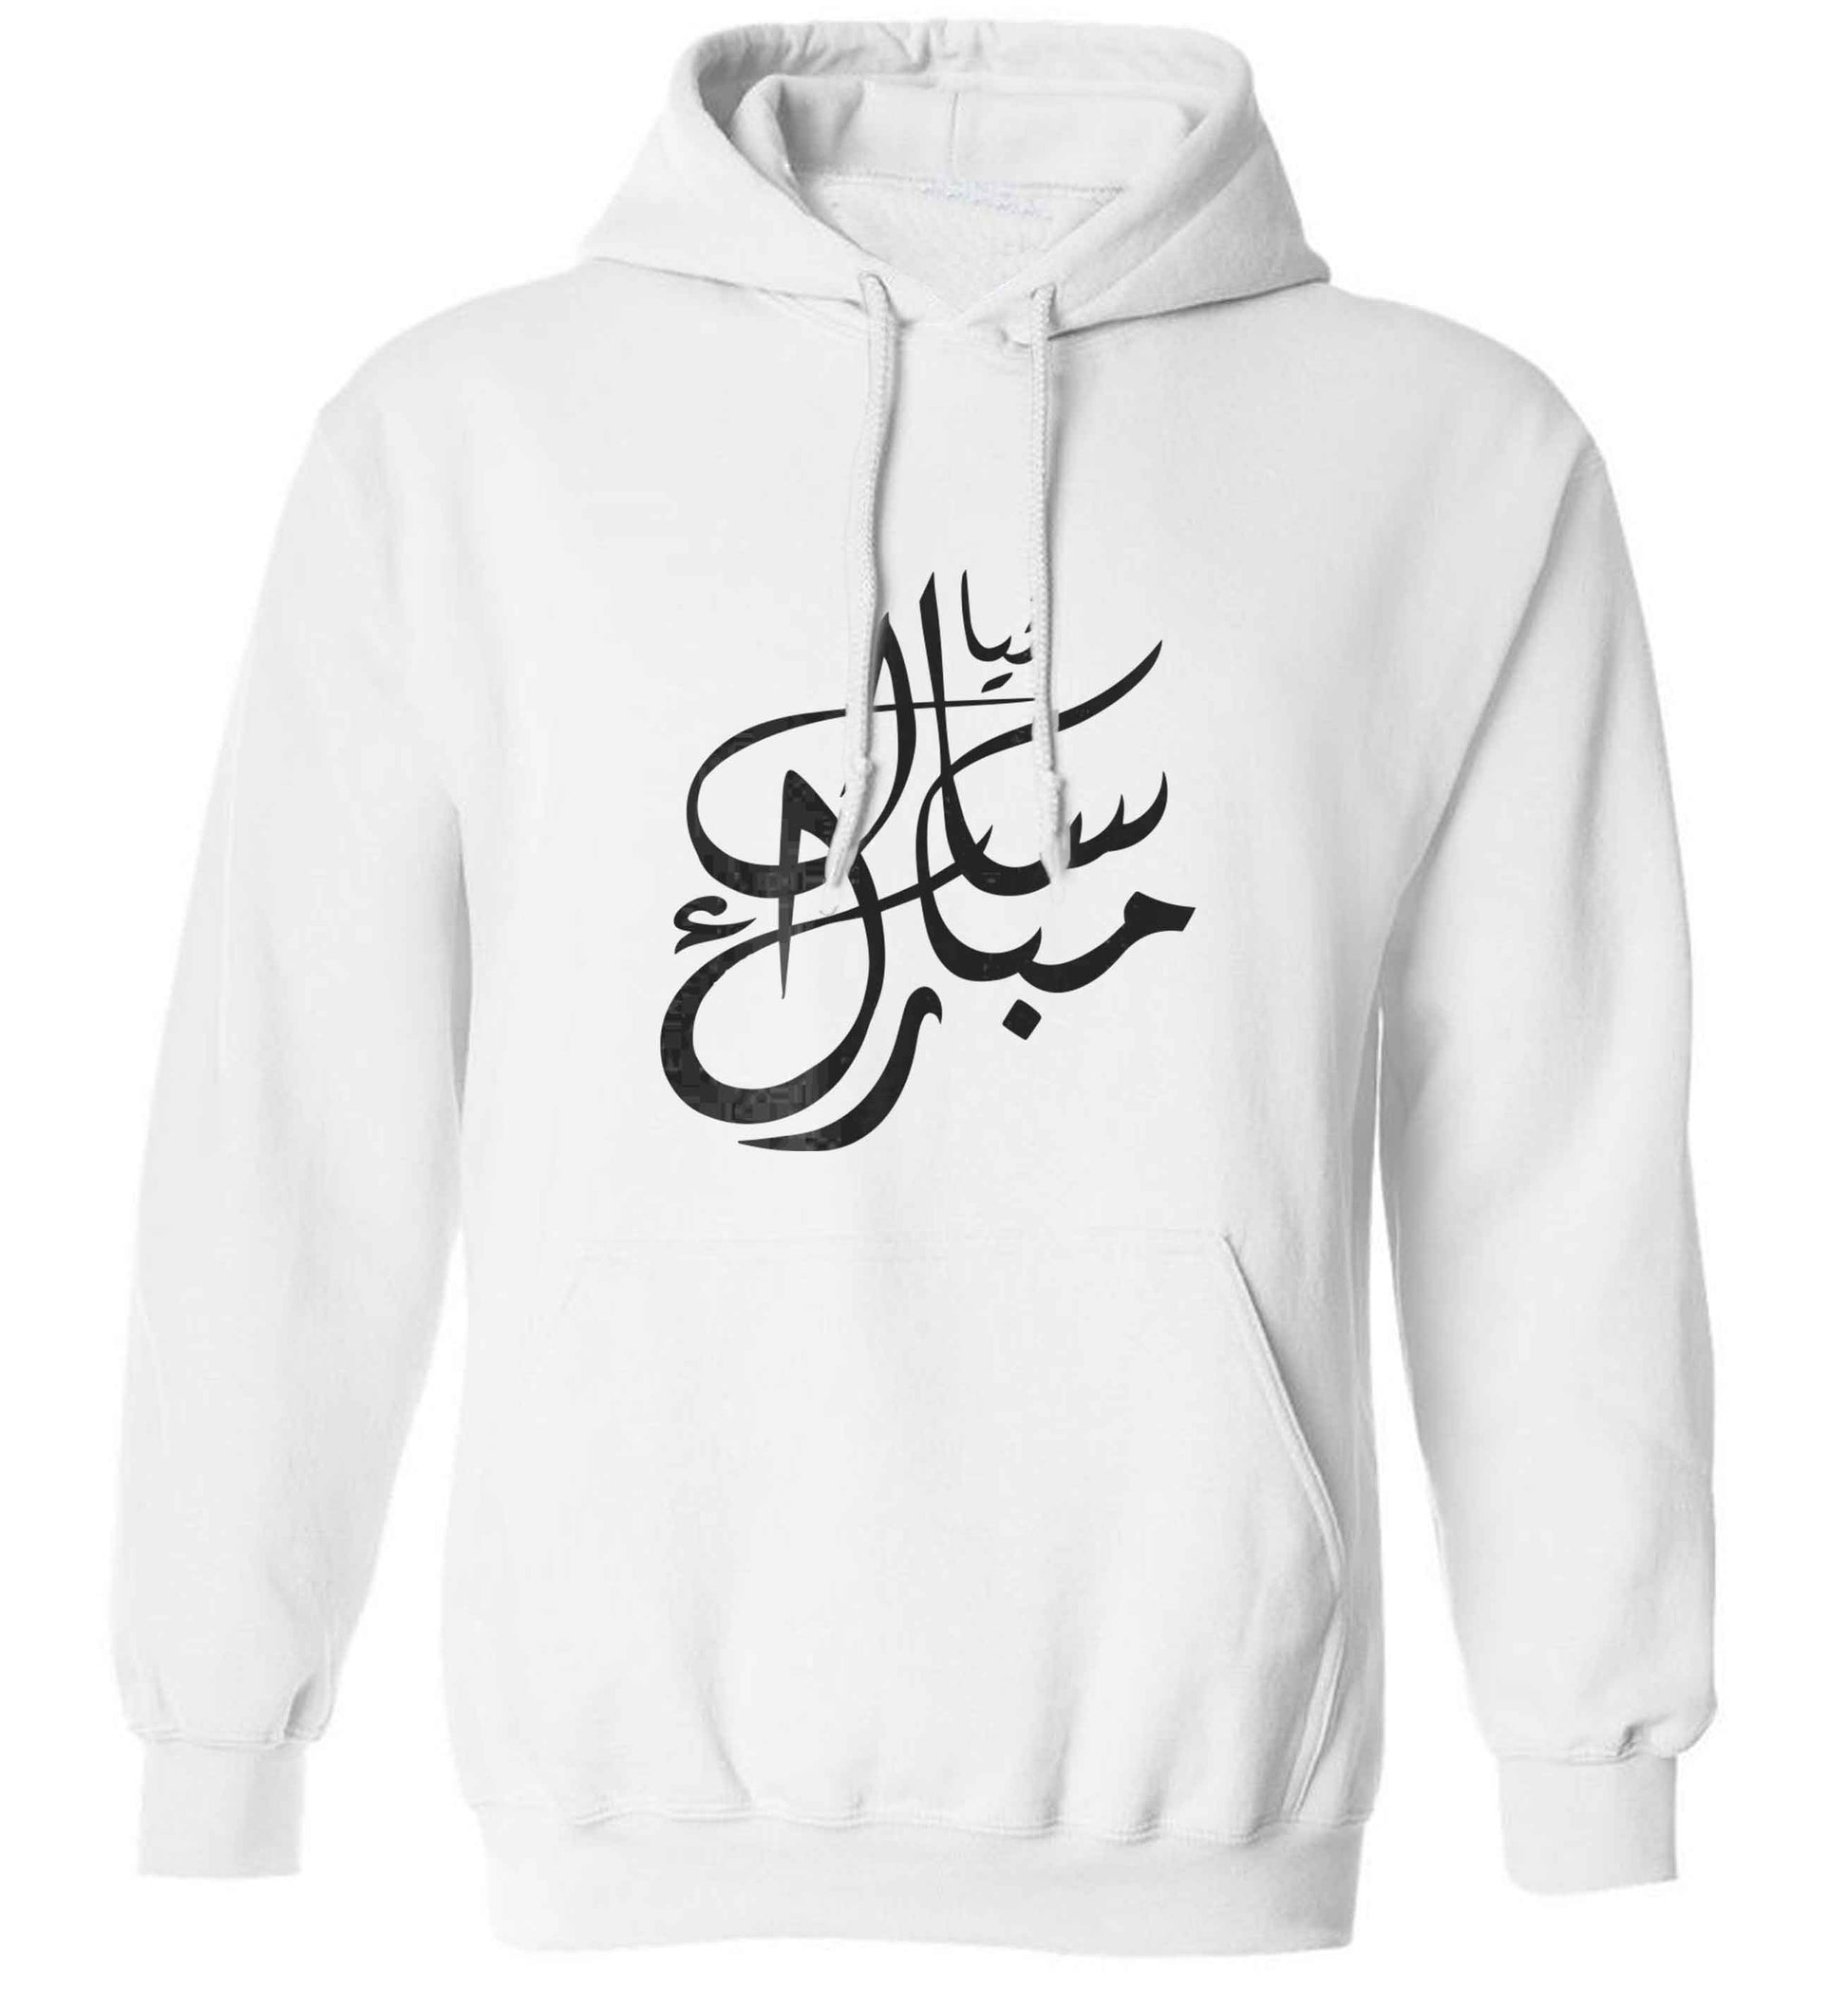 Urdu Naya saal mubarak adults unisex white hoodie 2XL